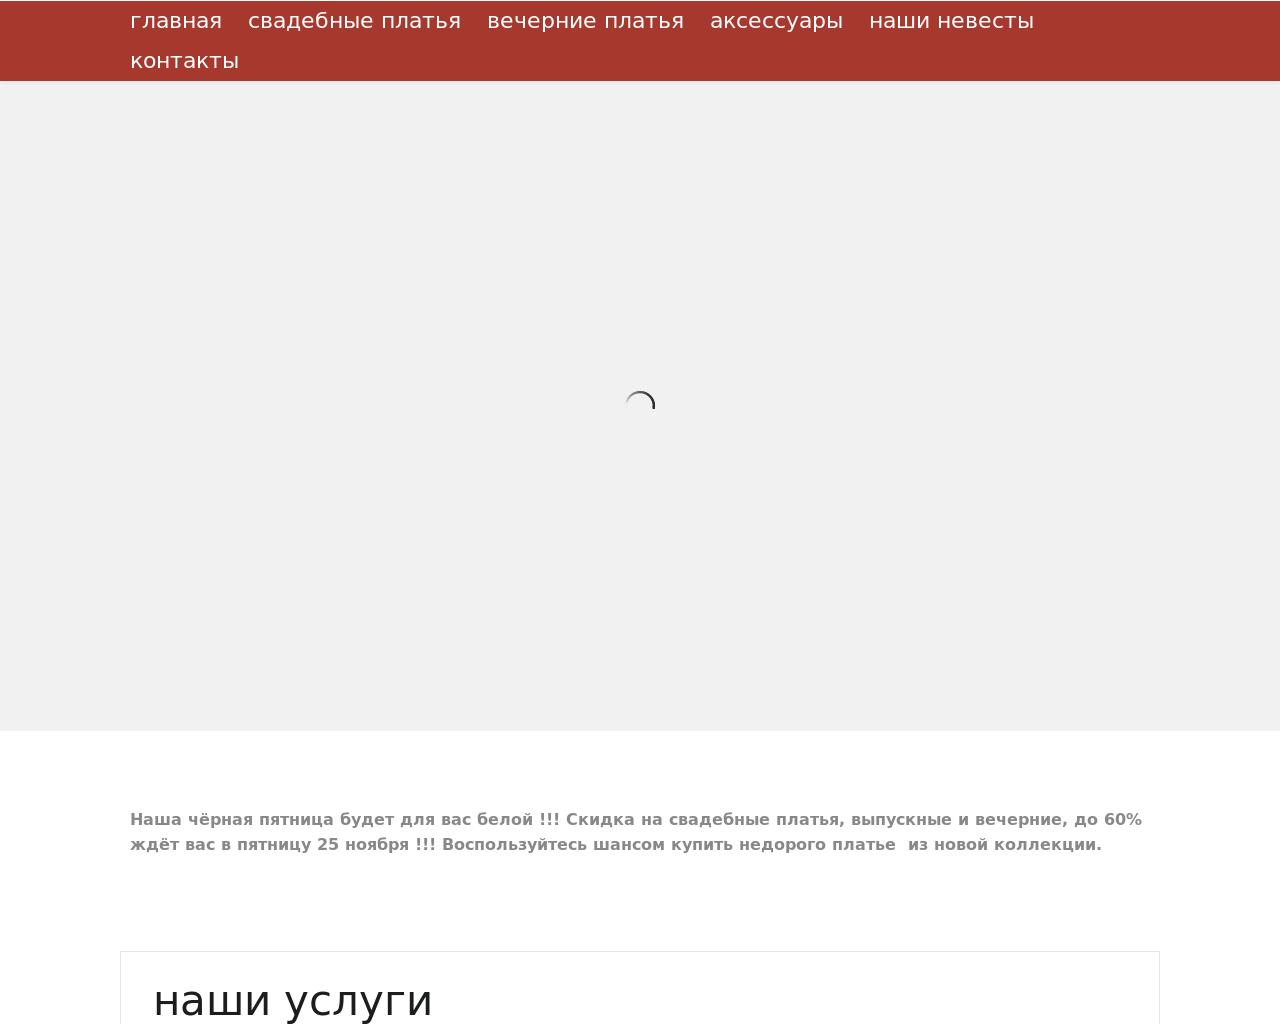 Изображение сайта tiaratver.ru в разрешении 1280x1024